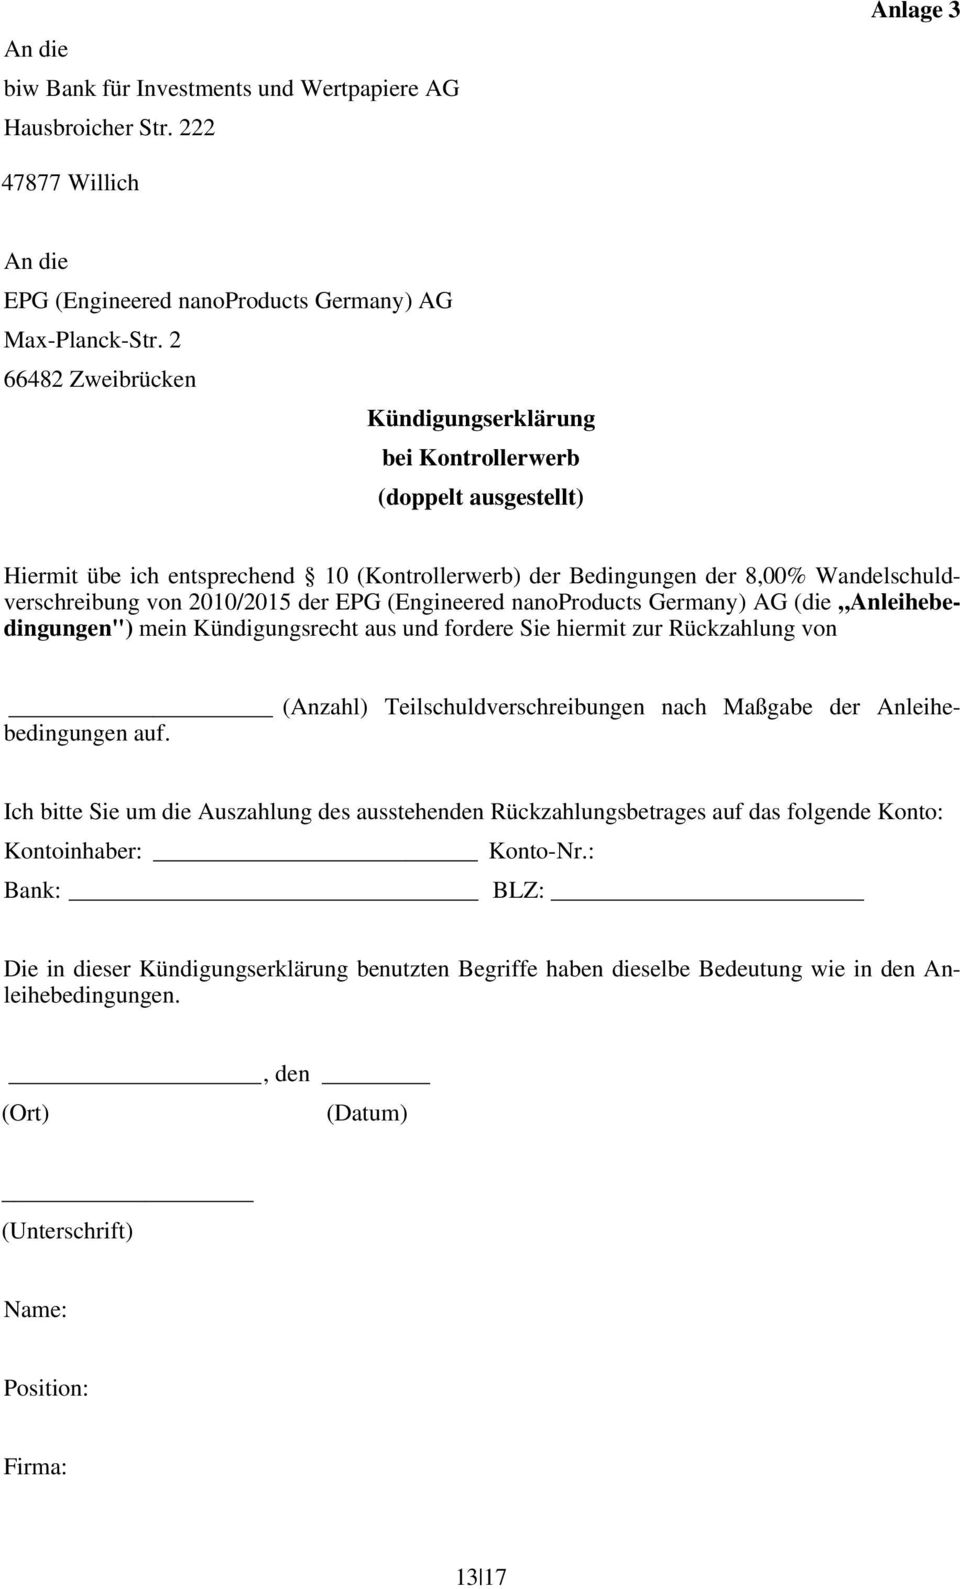 EPG (Engineered nanoproducts Germany) AG (die Anleihebedingungen") mein Kündigungsrecht aus und fordere Sie hiermit zur Rückzahlung von (Anzahl) Teilschuldverschreibungen nach Maßgabe der